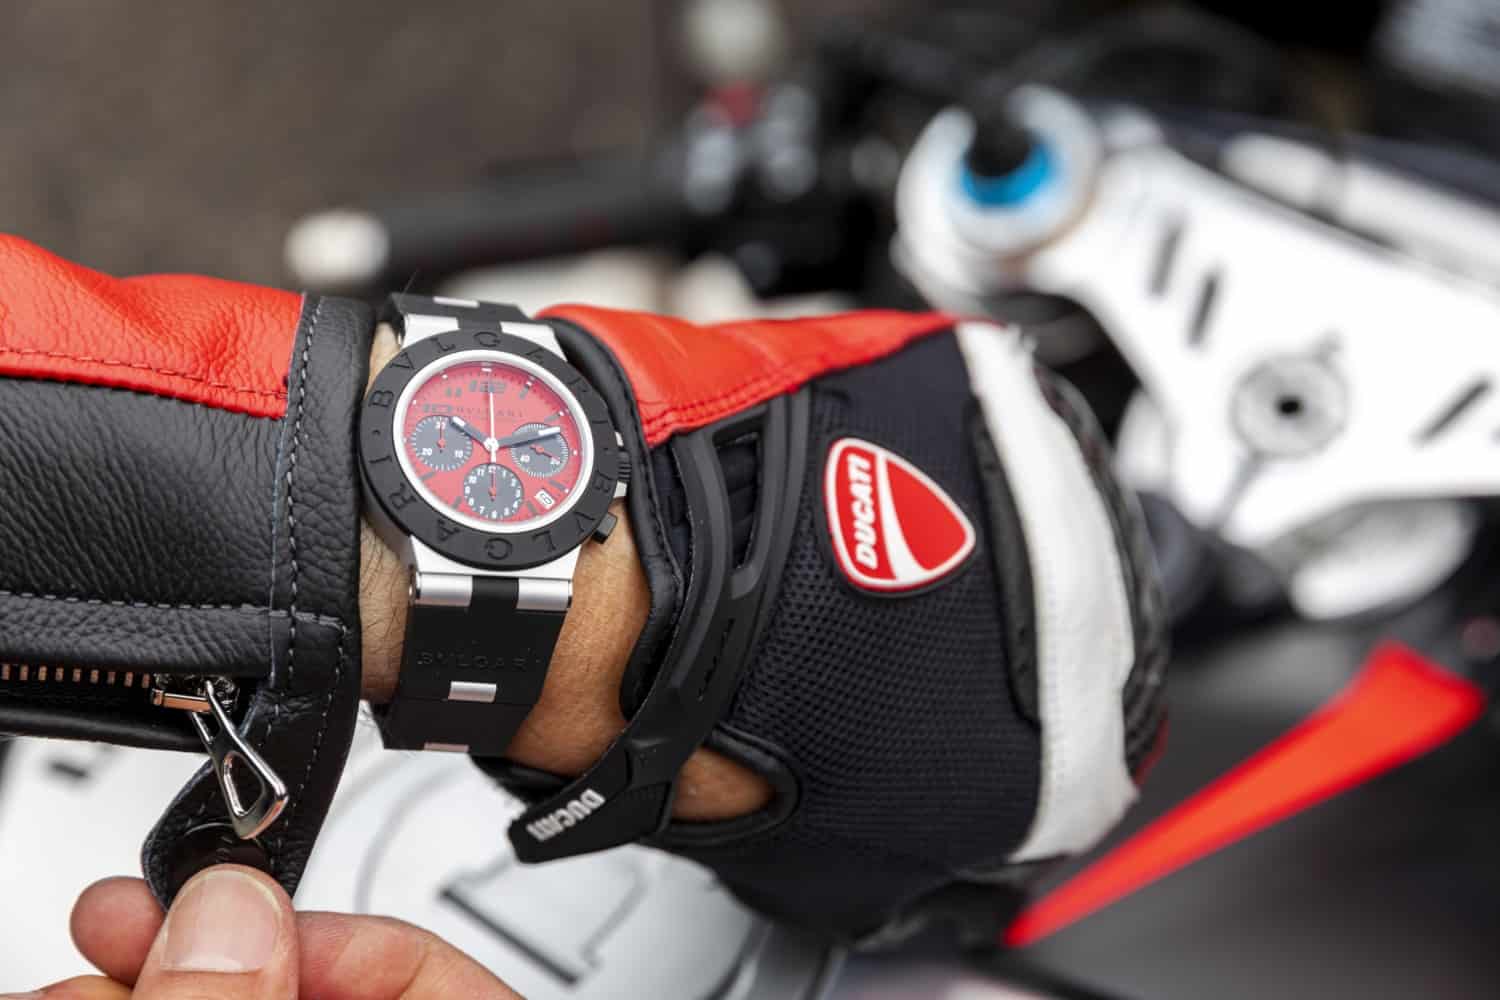 Eksklusivt Ducati / Bvlgari armbåndsur med morsom detalje